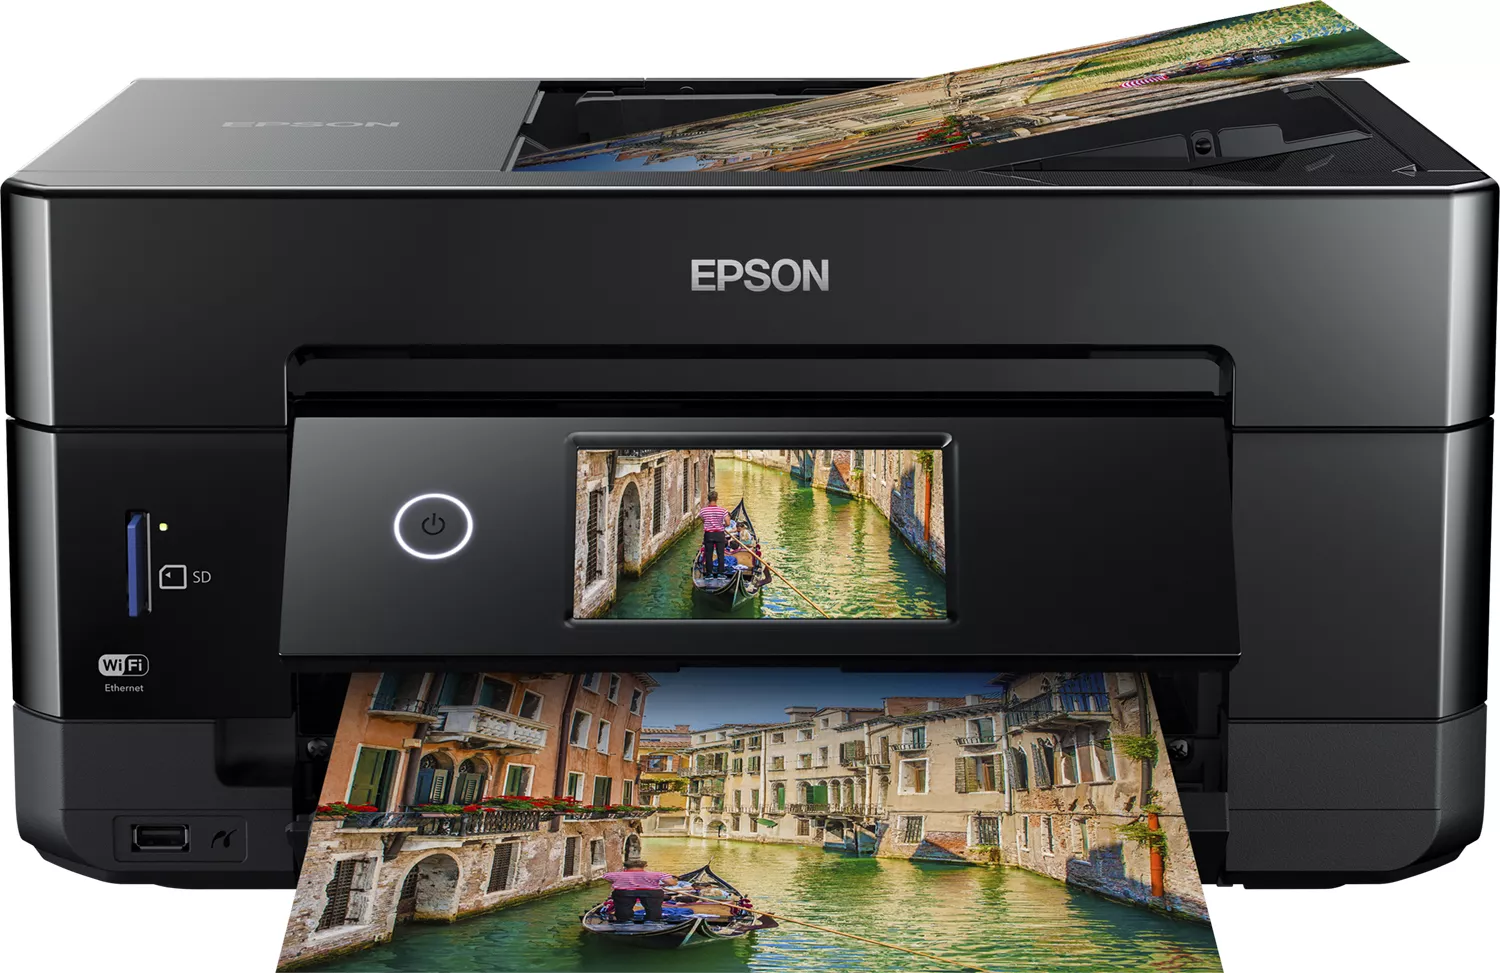 Achat EPSON Expression Premium XP-7100 Small-in-One MFP et autres produits de la marque Epson